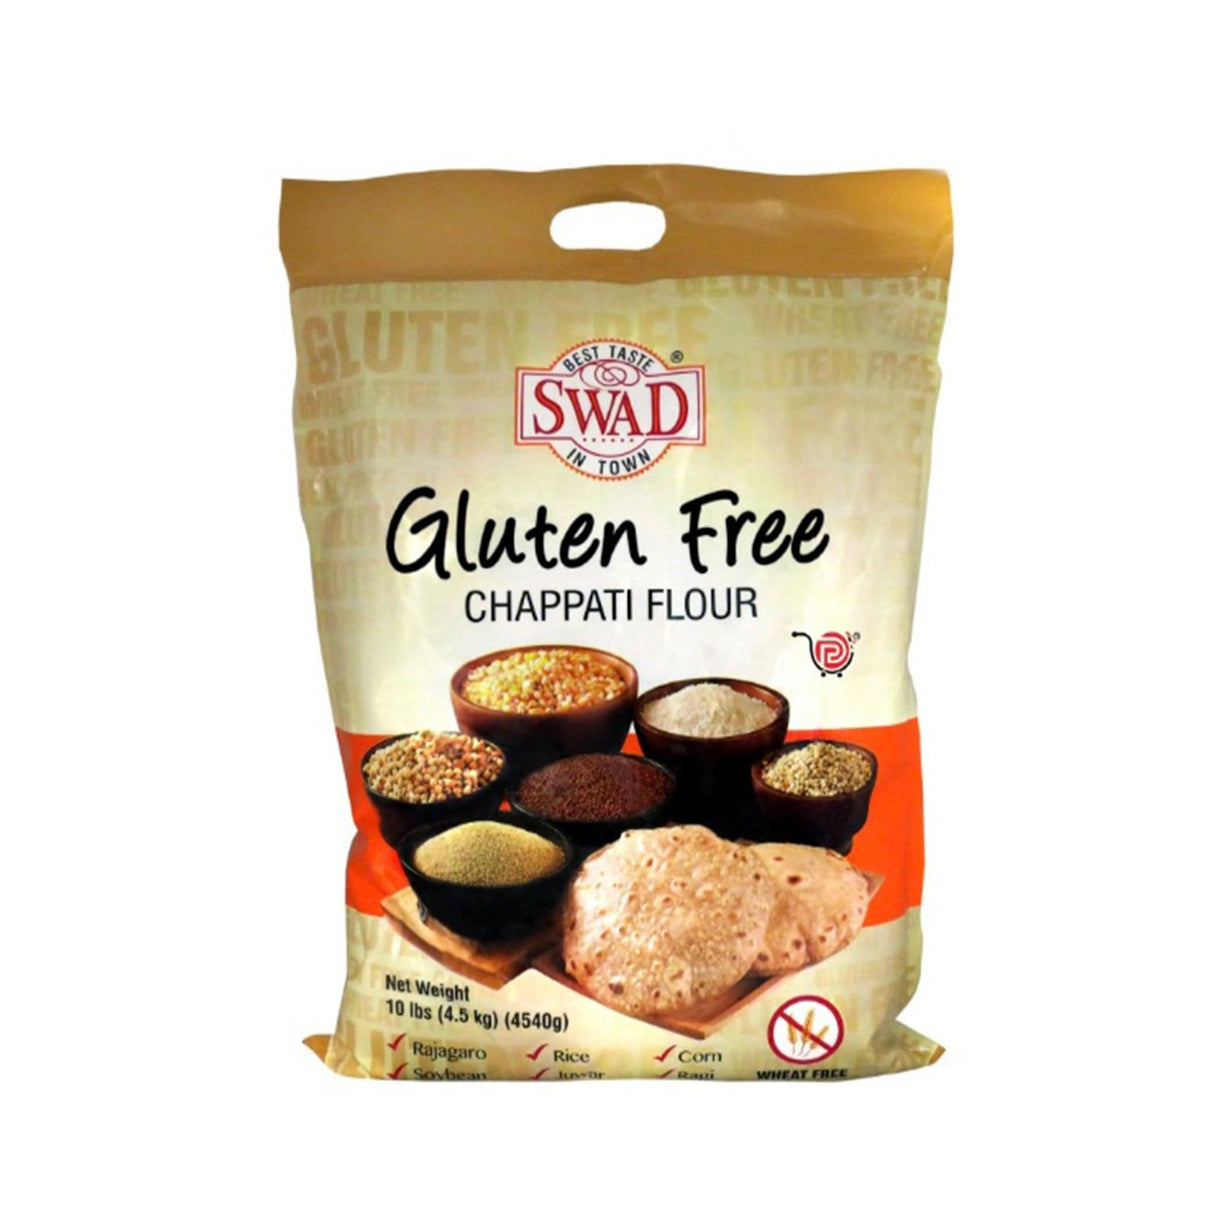 Swad Gluten Free Chappati Flour